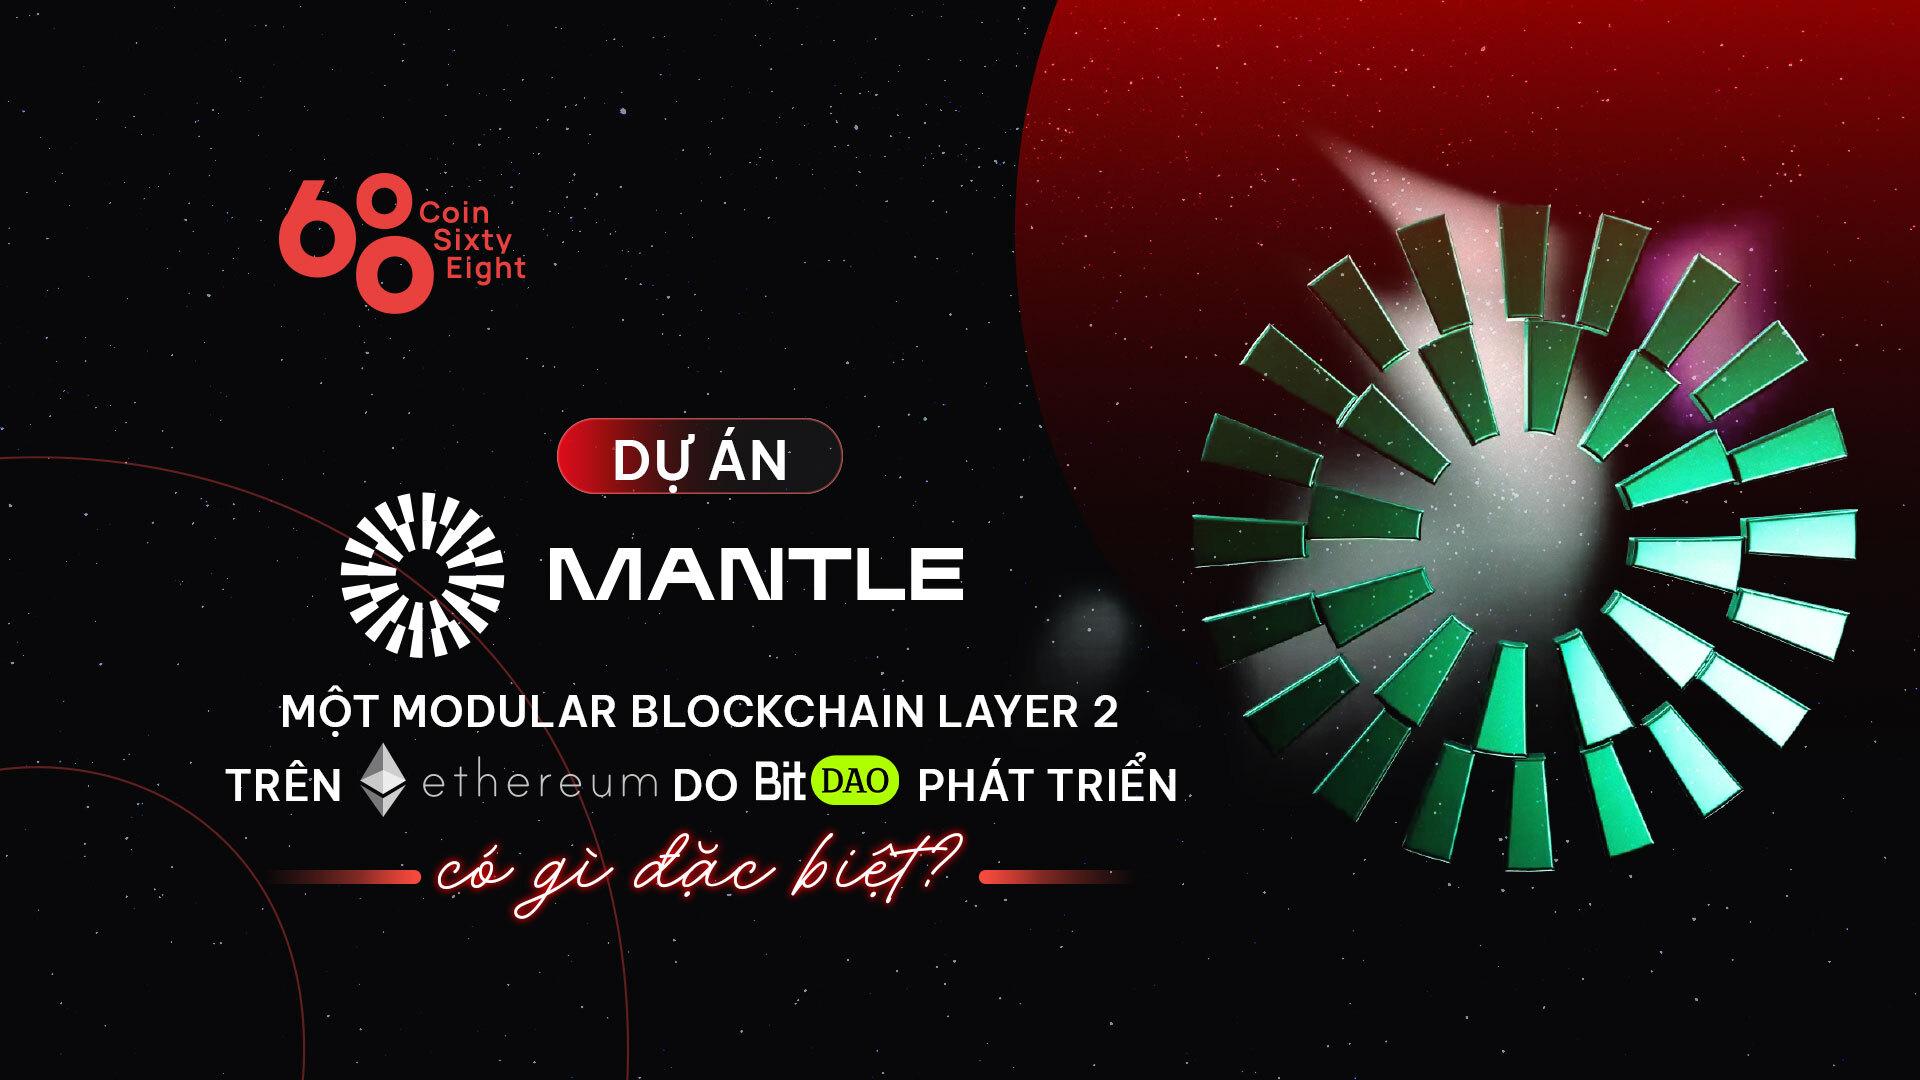 mantle-modular-blockchain-layer-2-tren-ethereum-do-bitdao-phat-trien-co-gi-dac-biet